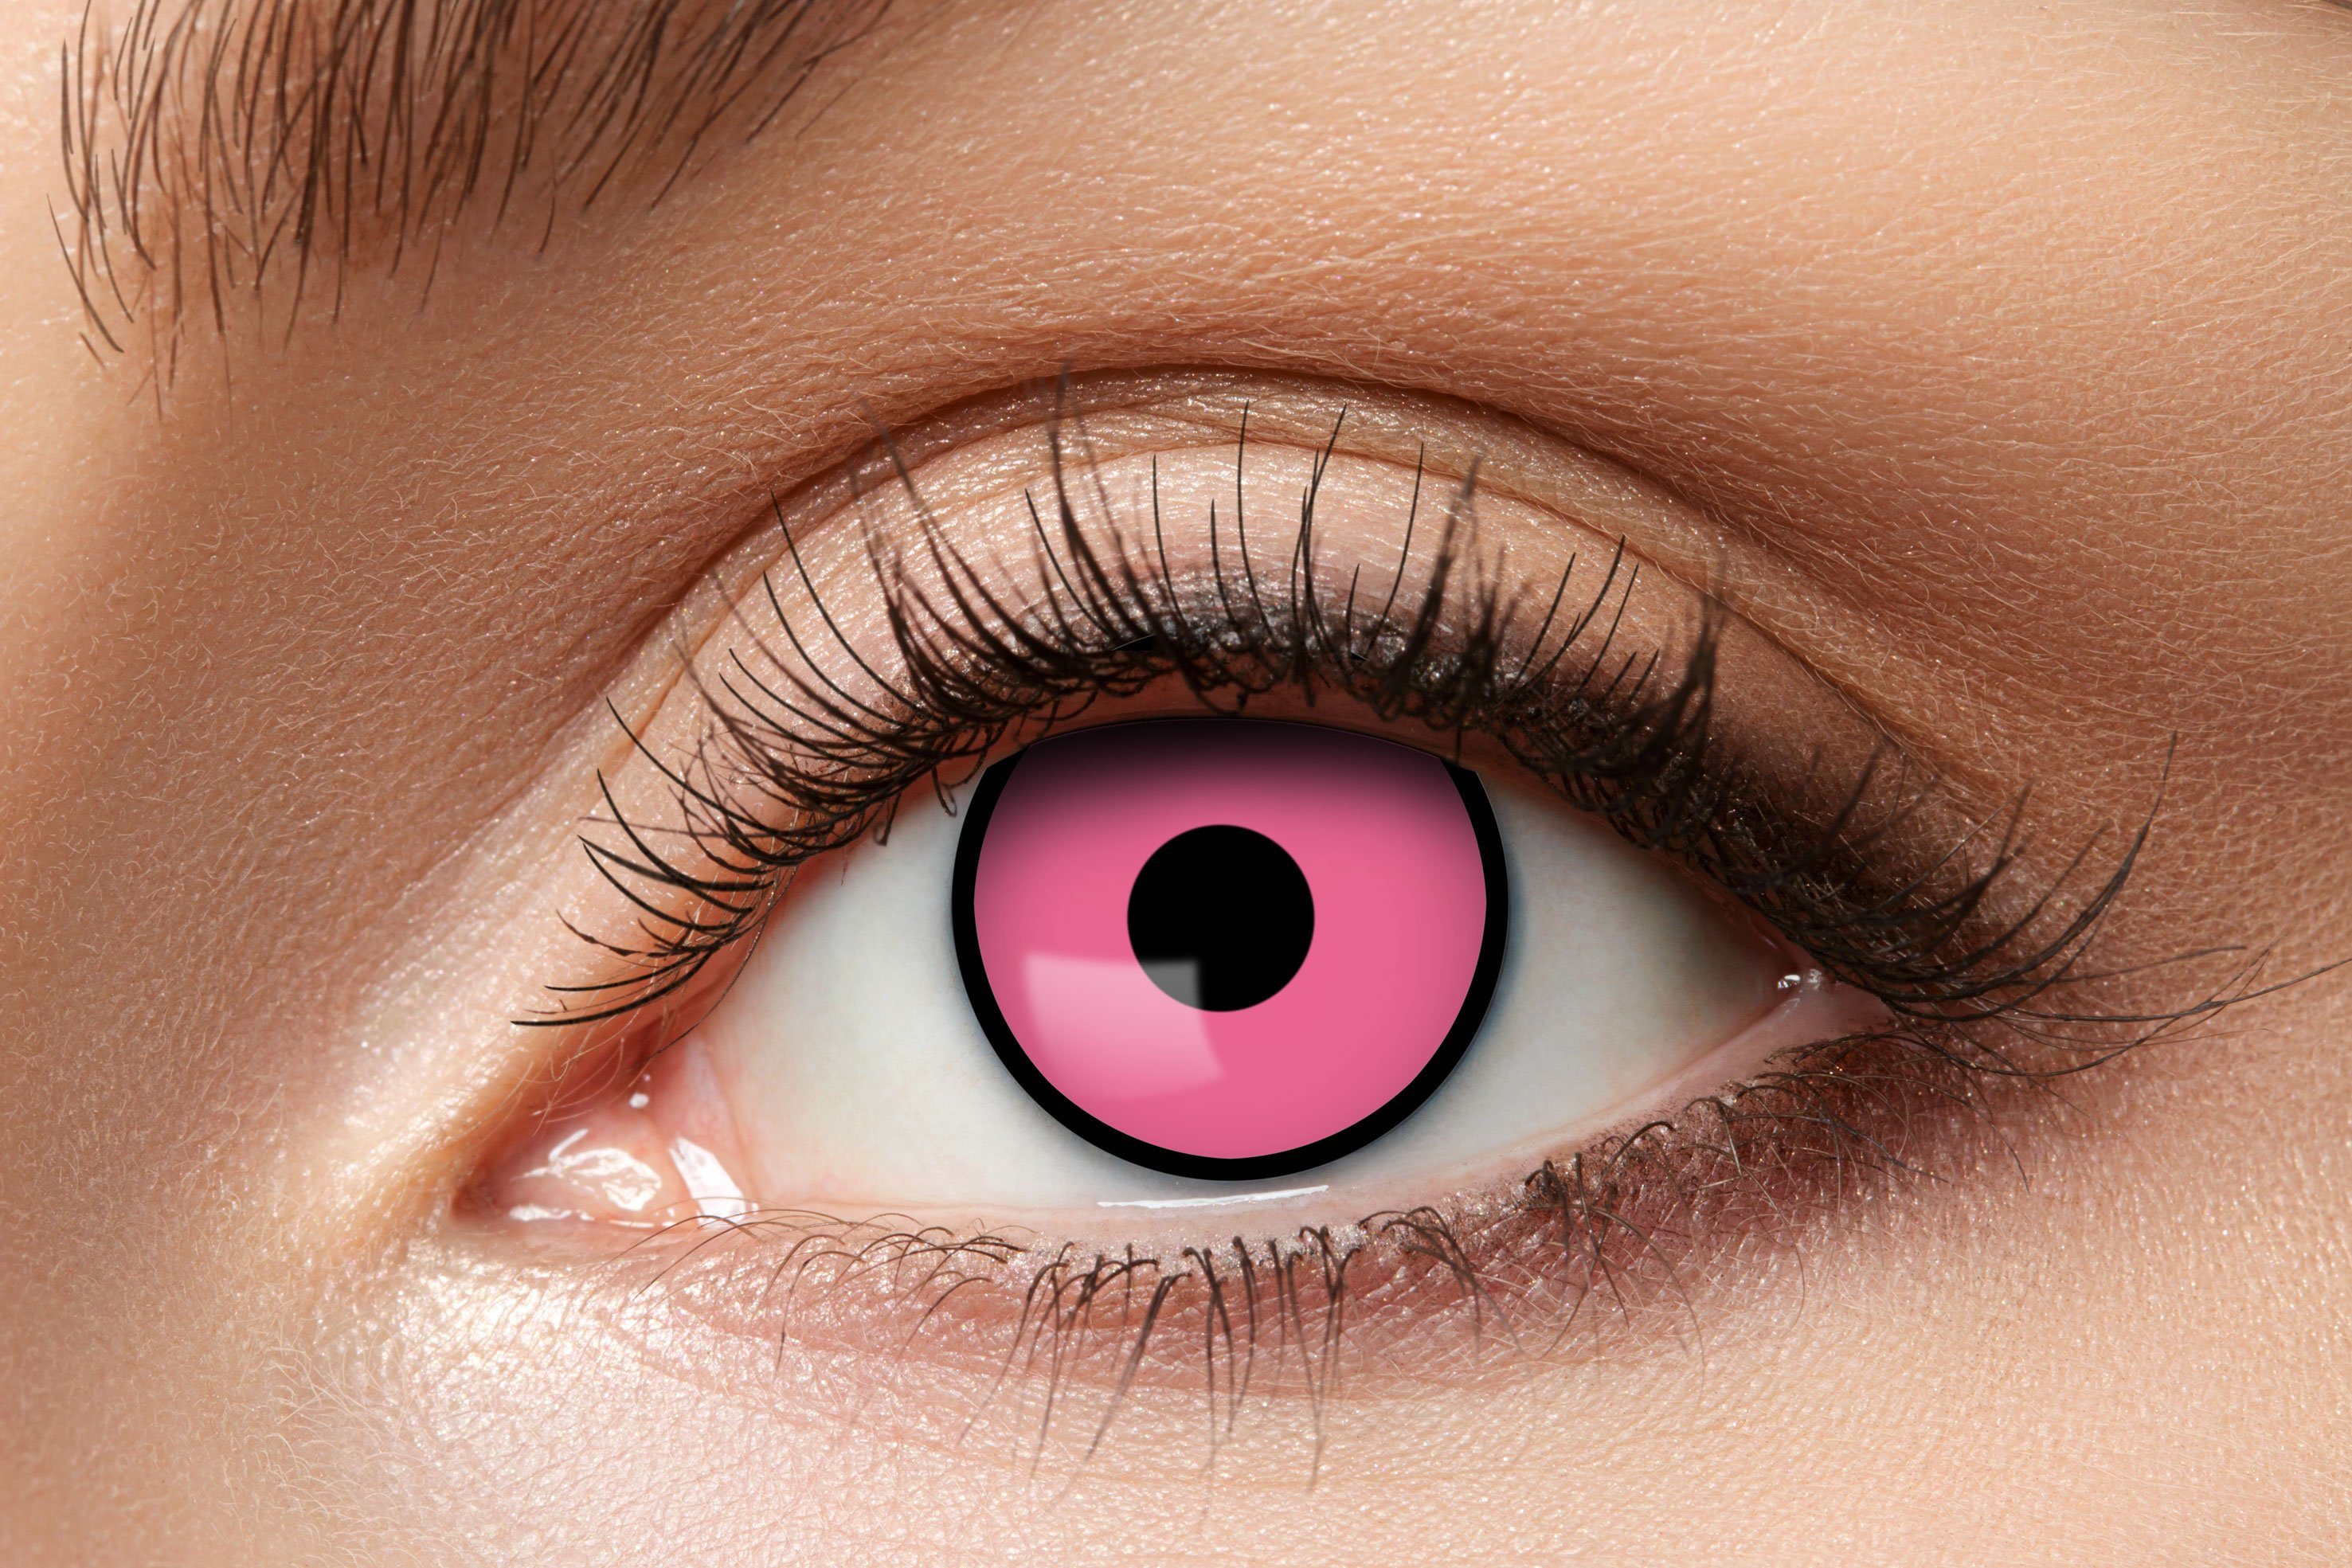 Eyecatcher Farblinsen Wochen Kontaktlinsen verschiedene neue Farben und Motive